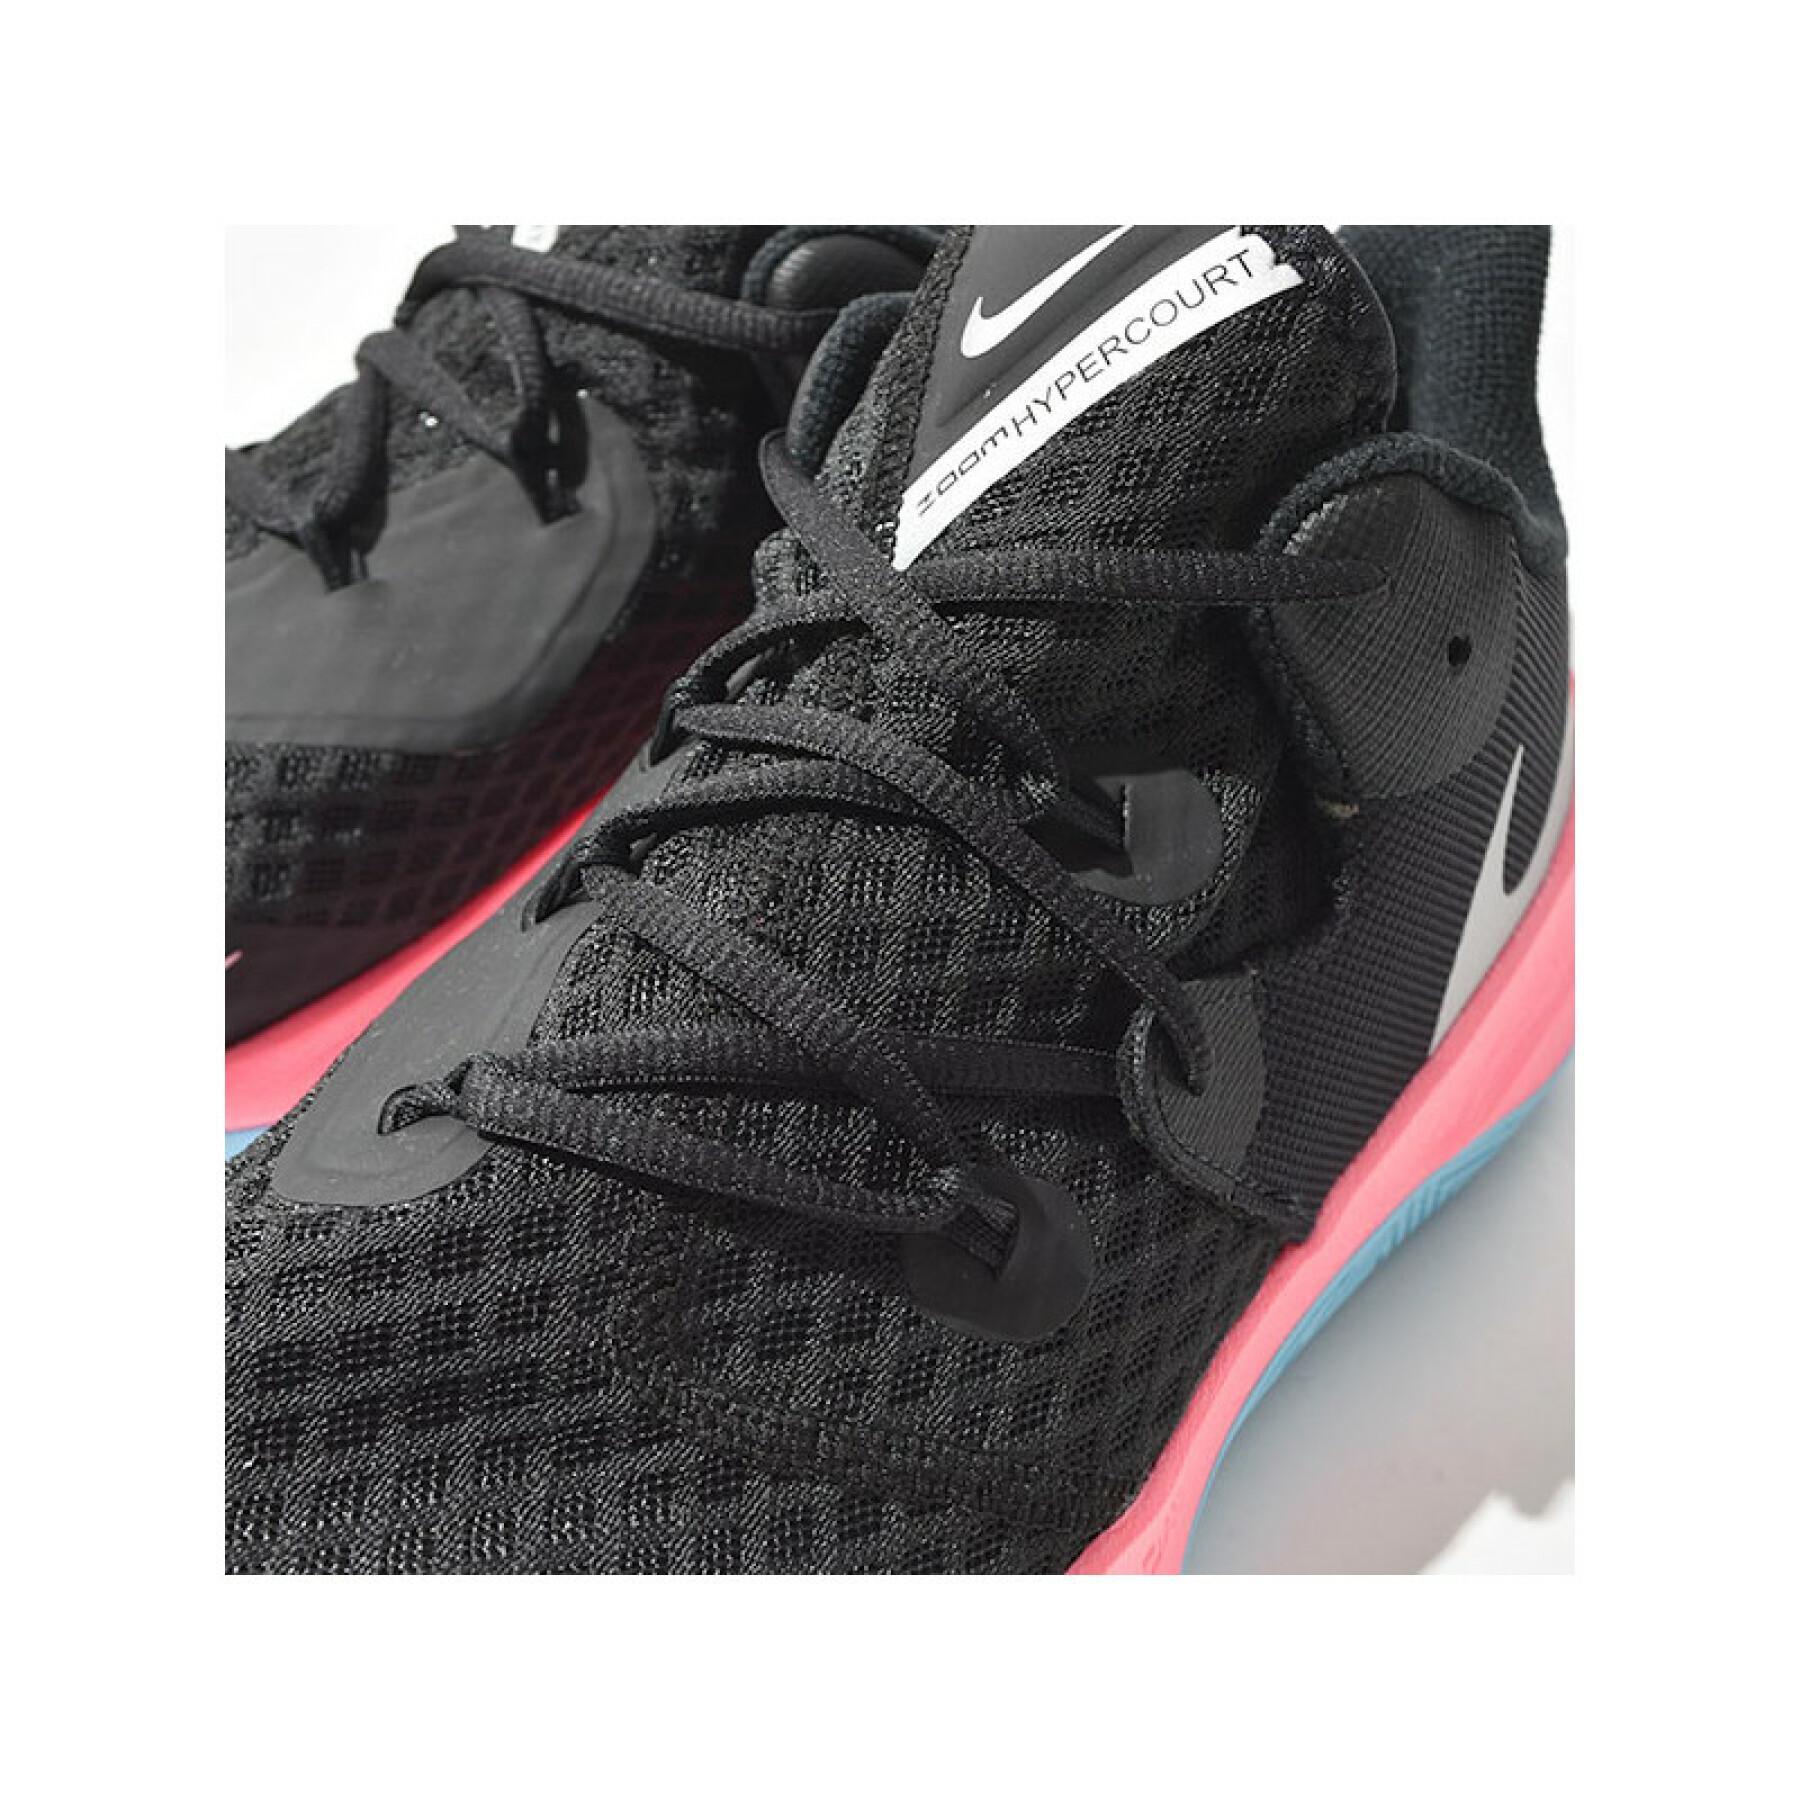 Skor Nike Zoom Hyperspeed Court